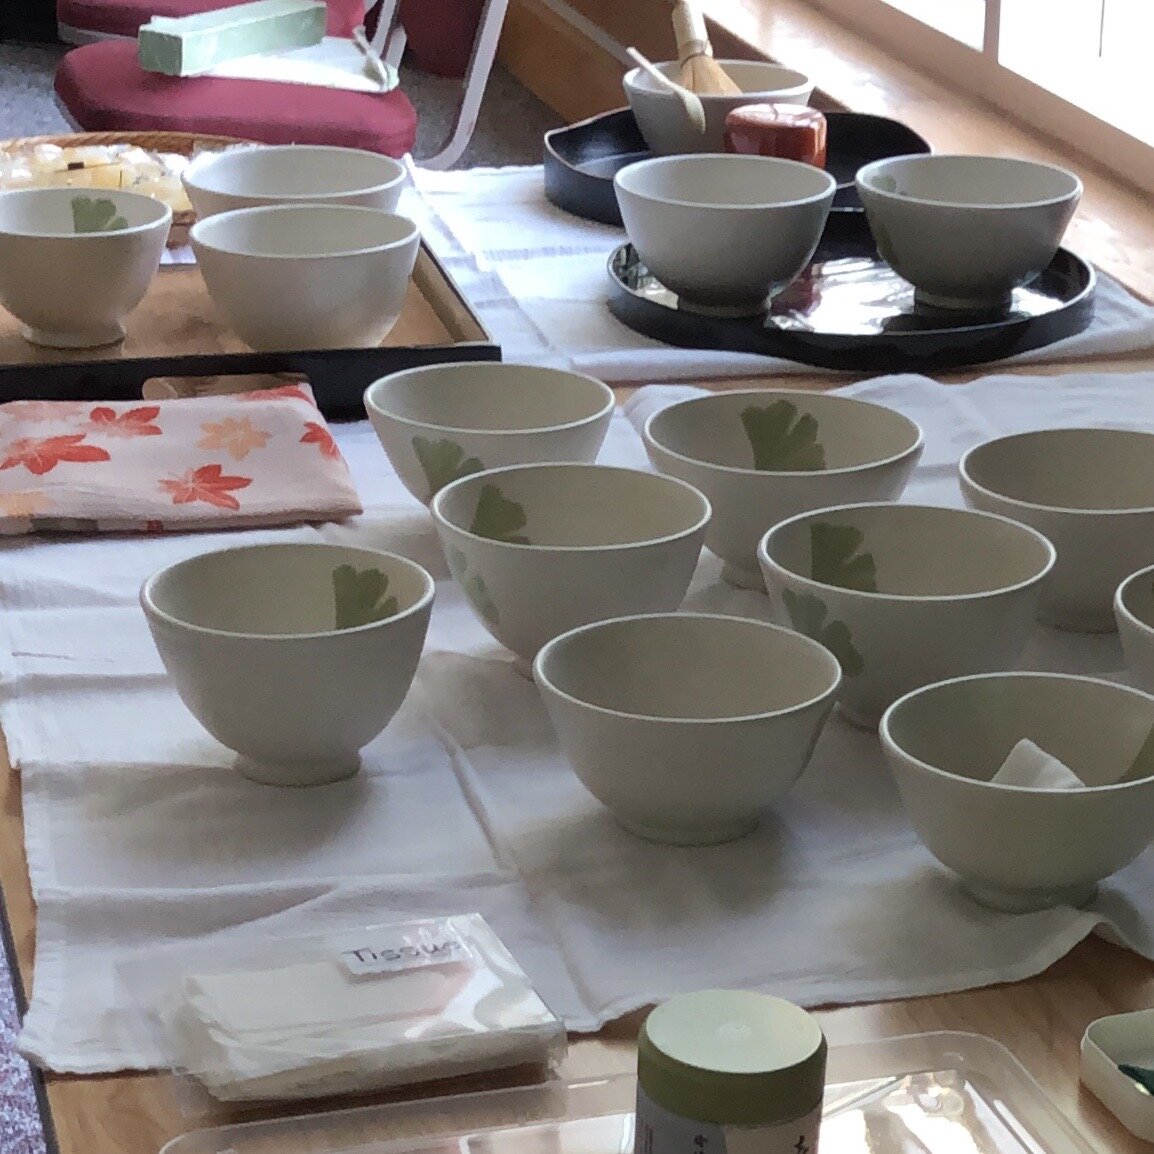 Linda's tea bowls for guests, 2019 